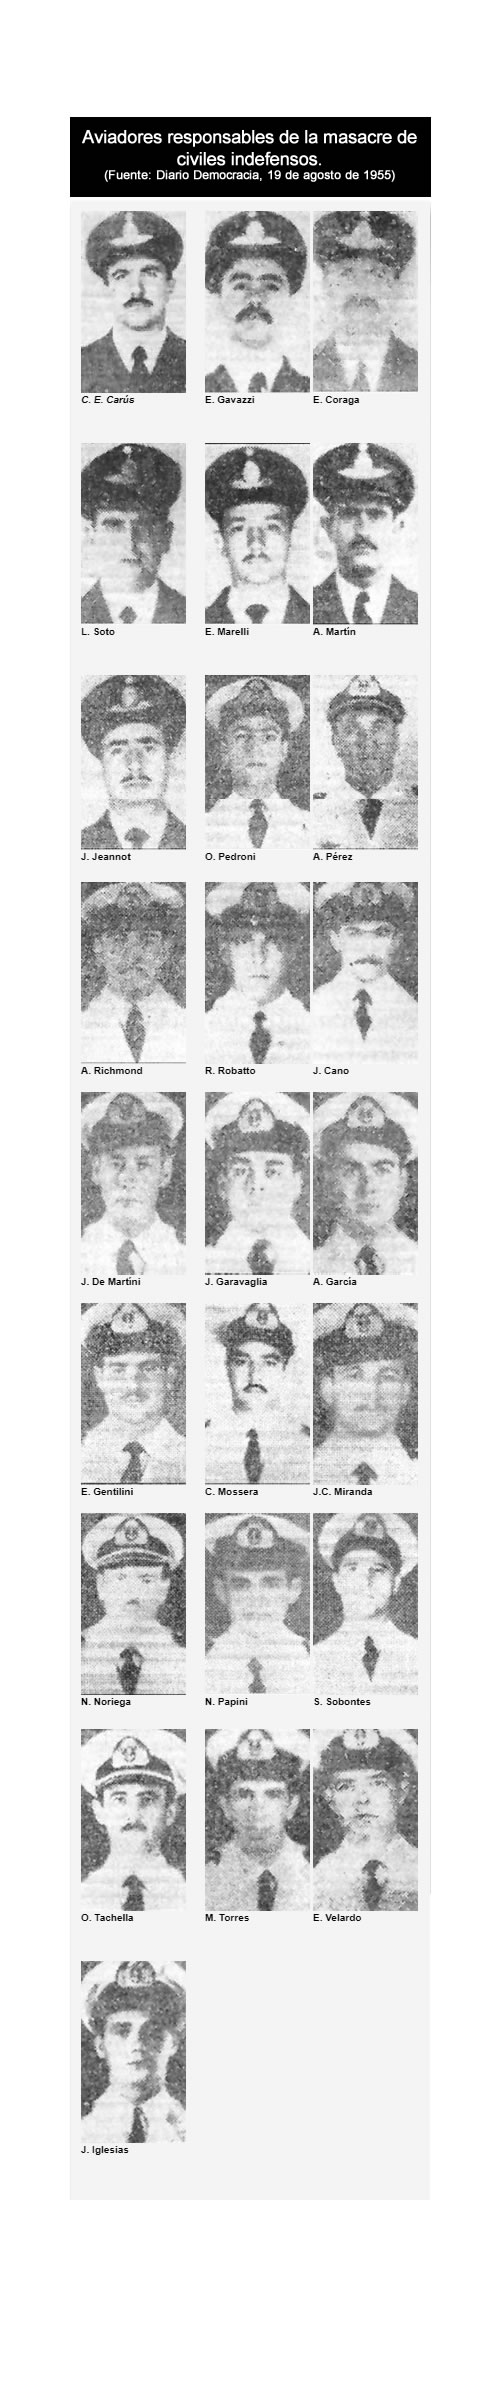 aviadores militares de la masacre de palza de mayo de 1955